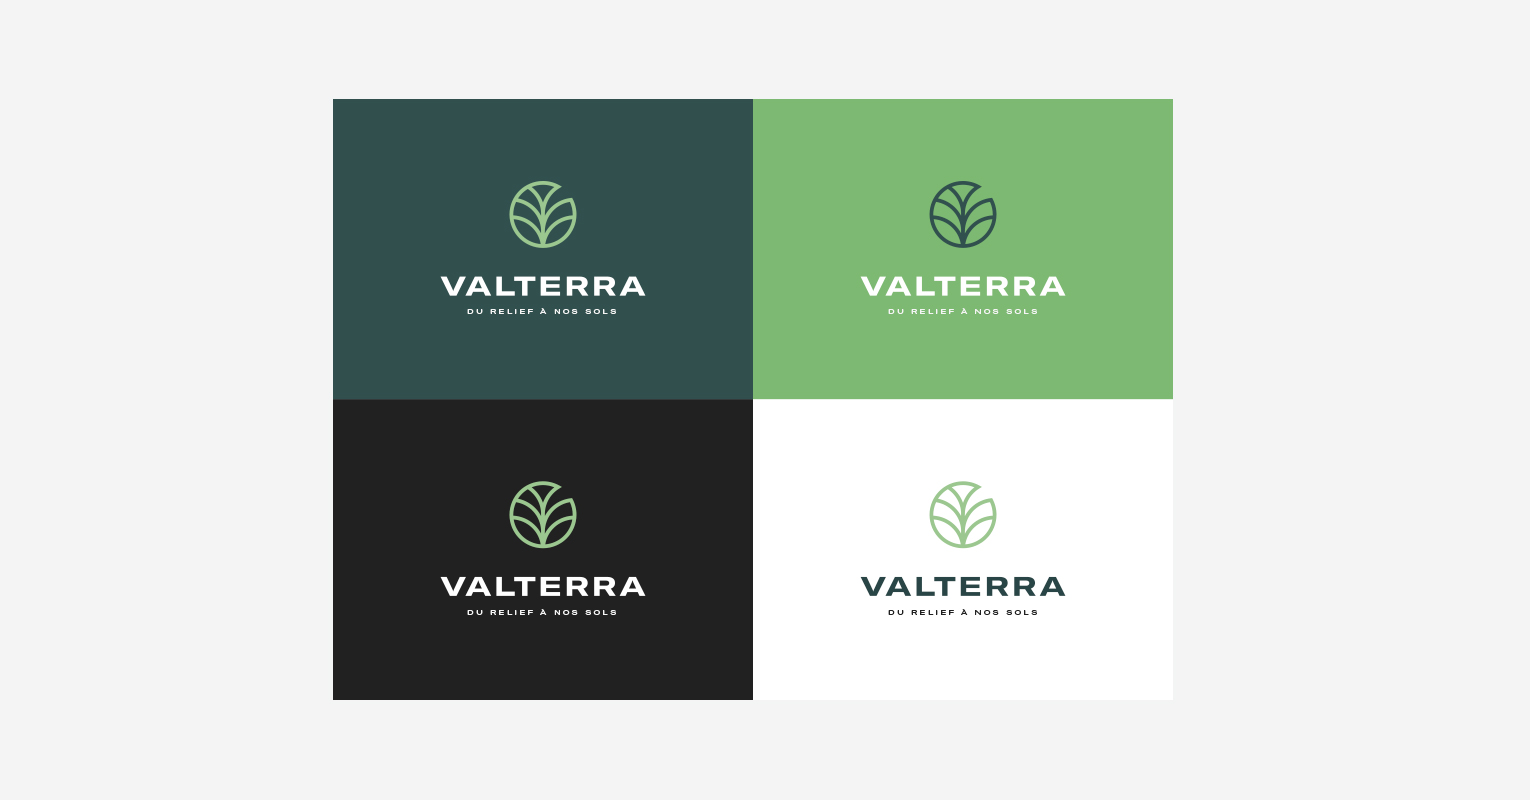 Les supports de communications réalisés pour Valterra